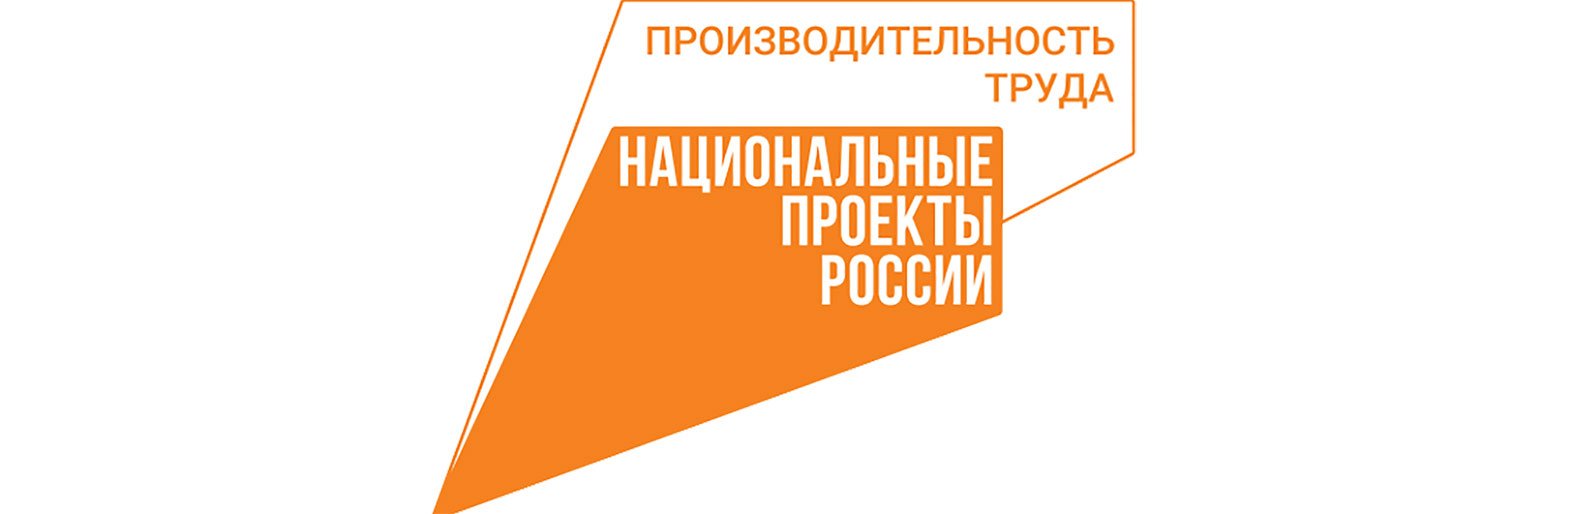 Федеральный форум «Производительность 360» прошёл в Сочи